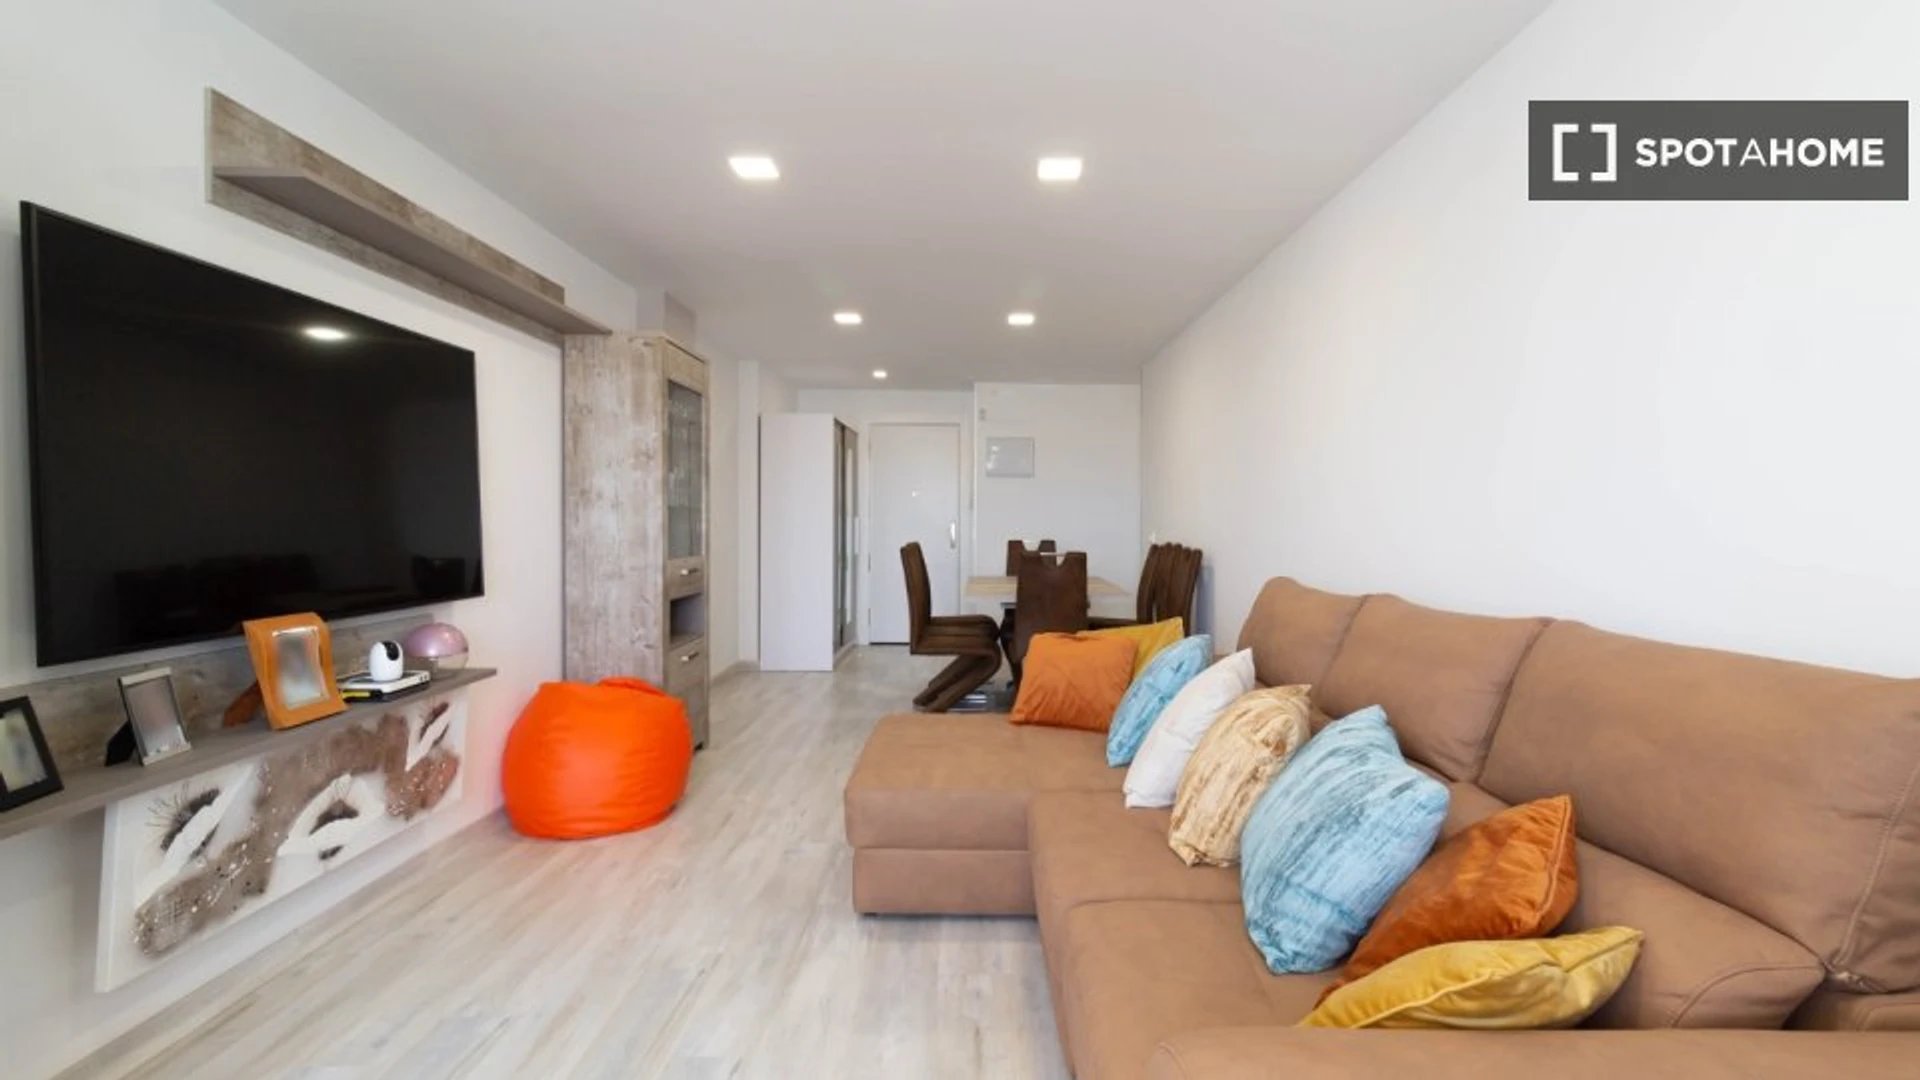 Apartamento moderno e brilhante em Las Palmas (gran Canaria)